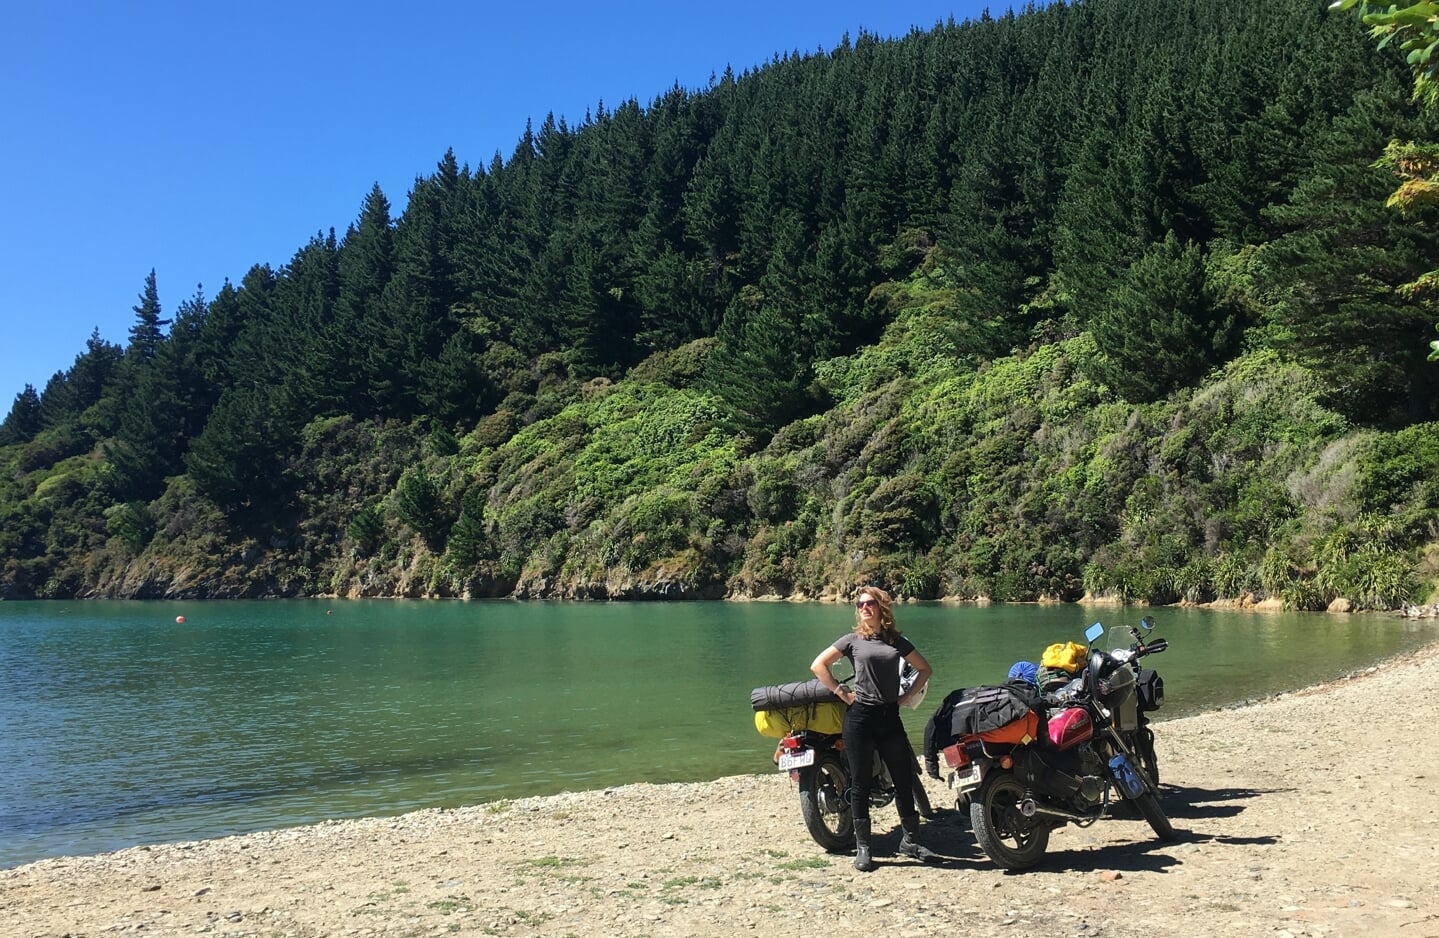 Motorfietstour over het zuidereiland van Nieuw-Zeeland, twee weken lang toeren met tent en slaapzakken achterop de fiets.